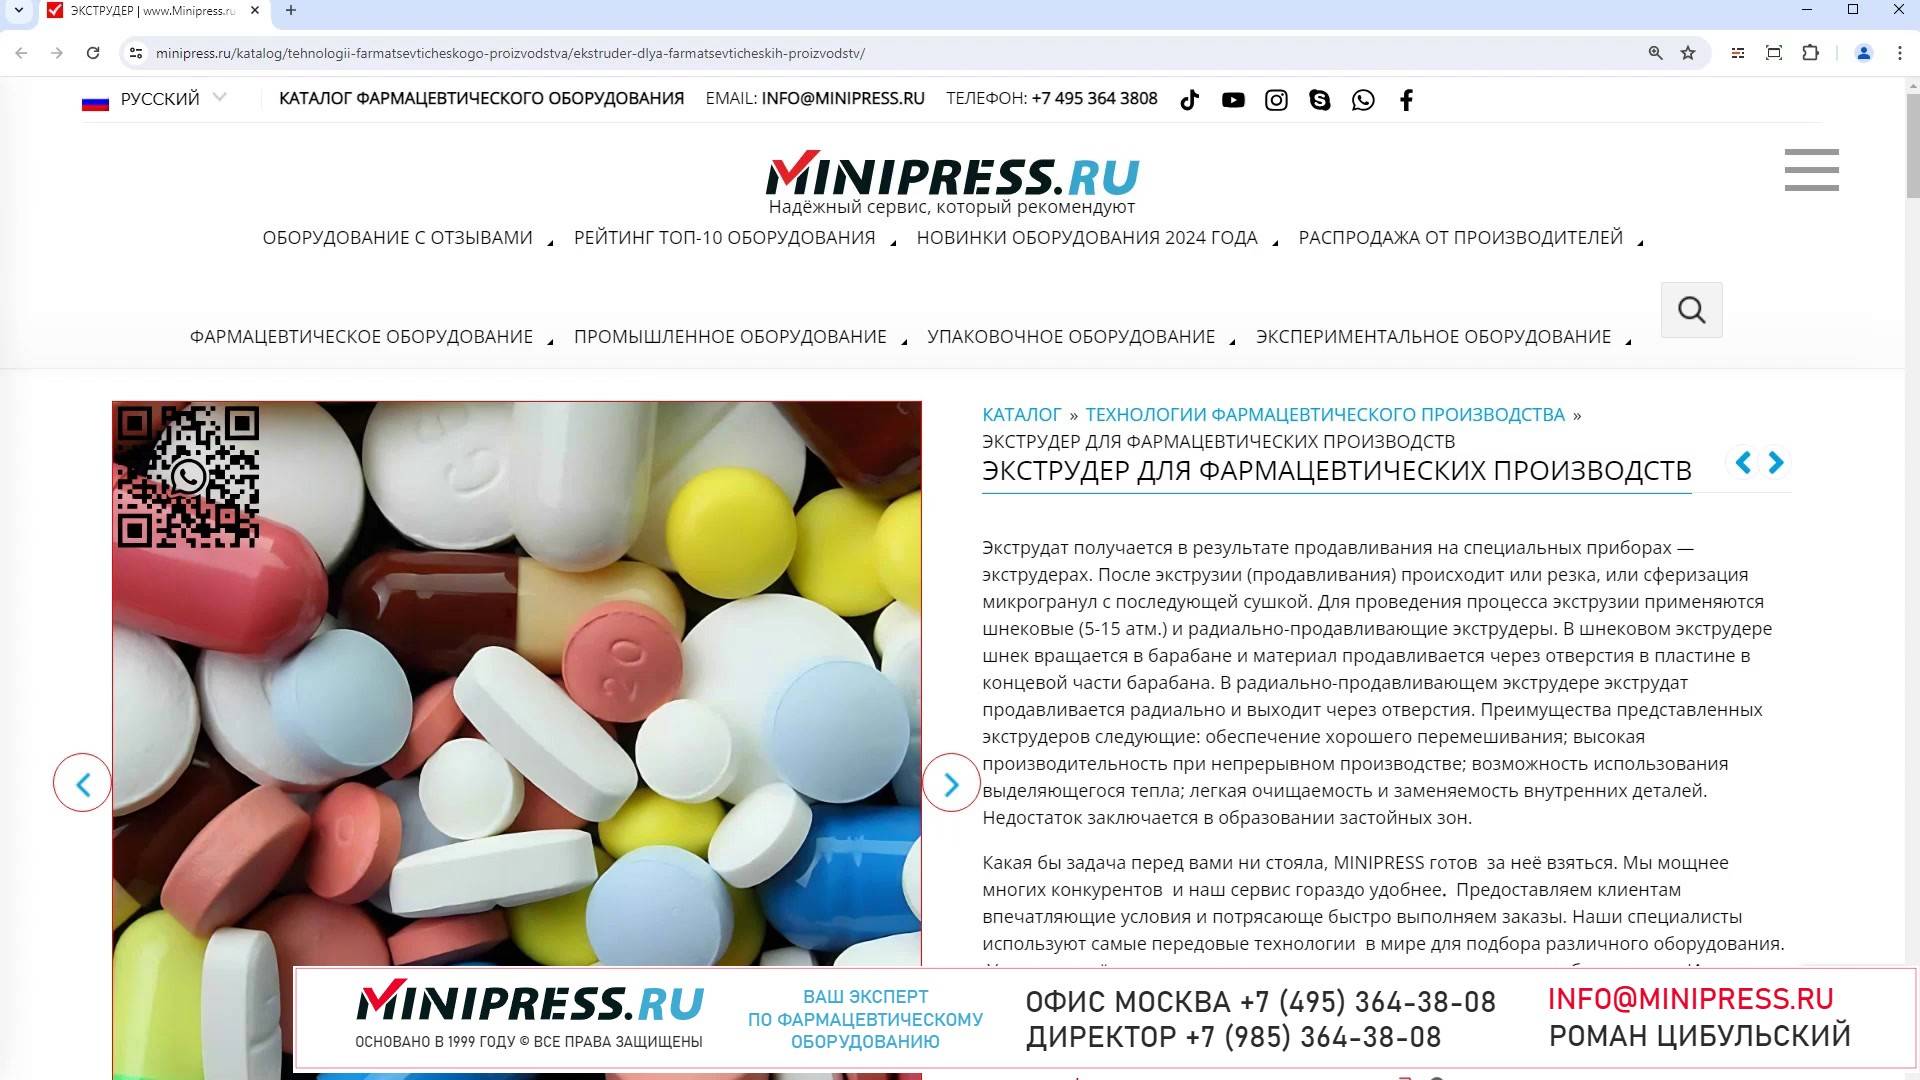 Minipress.ru Экструдер для фармацевтических производств